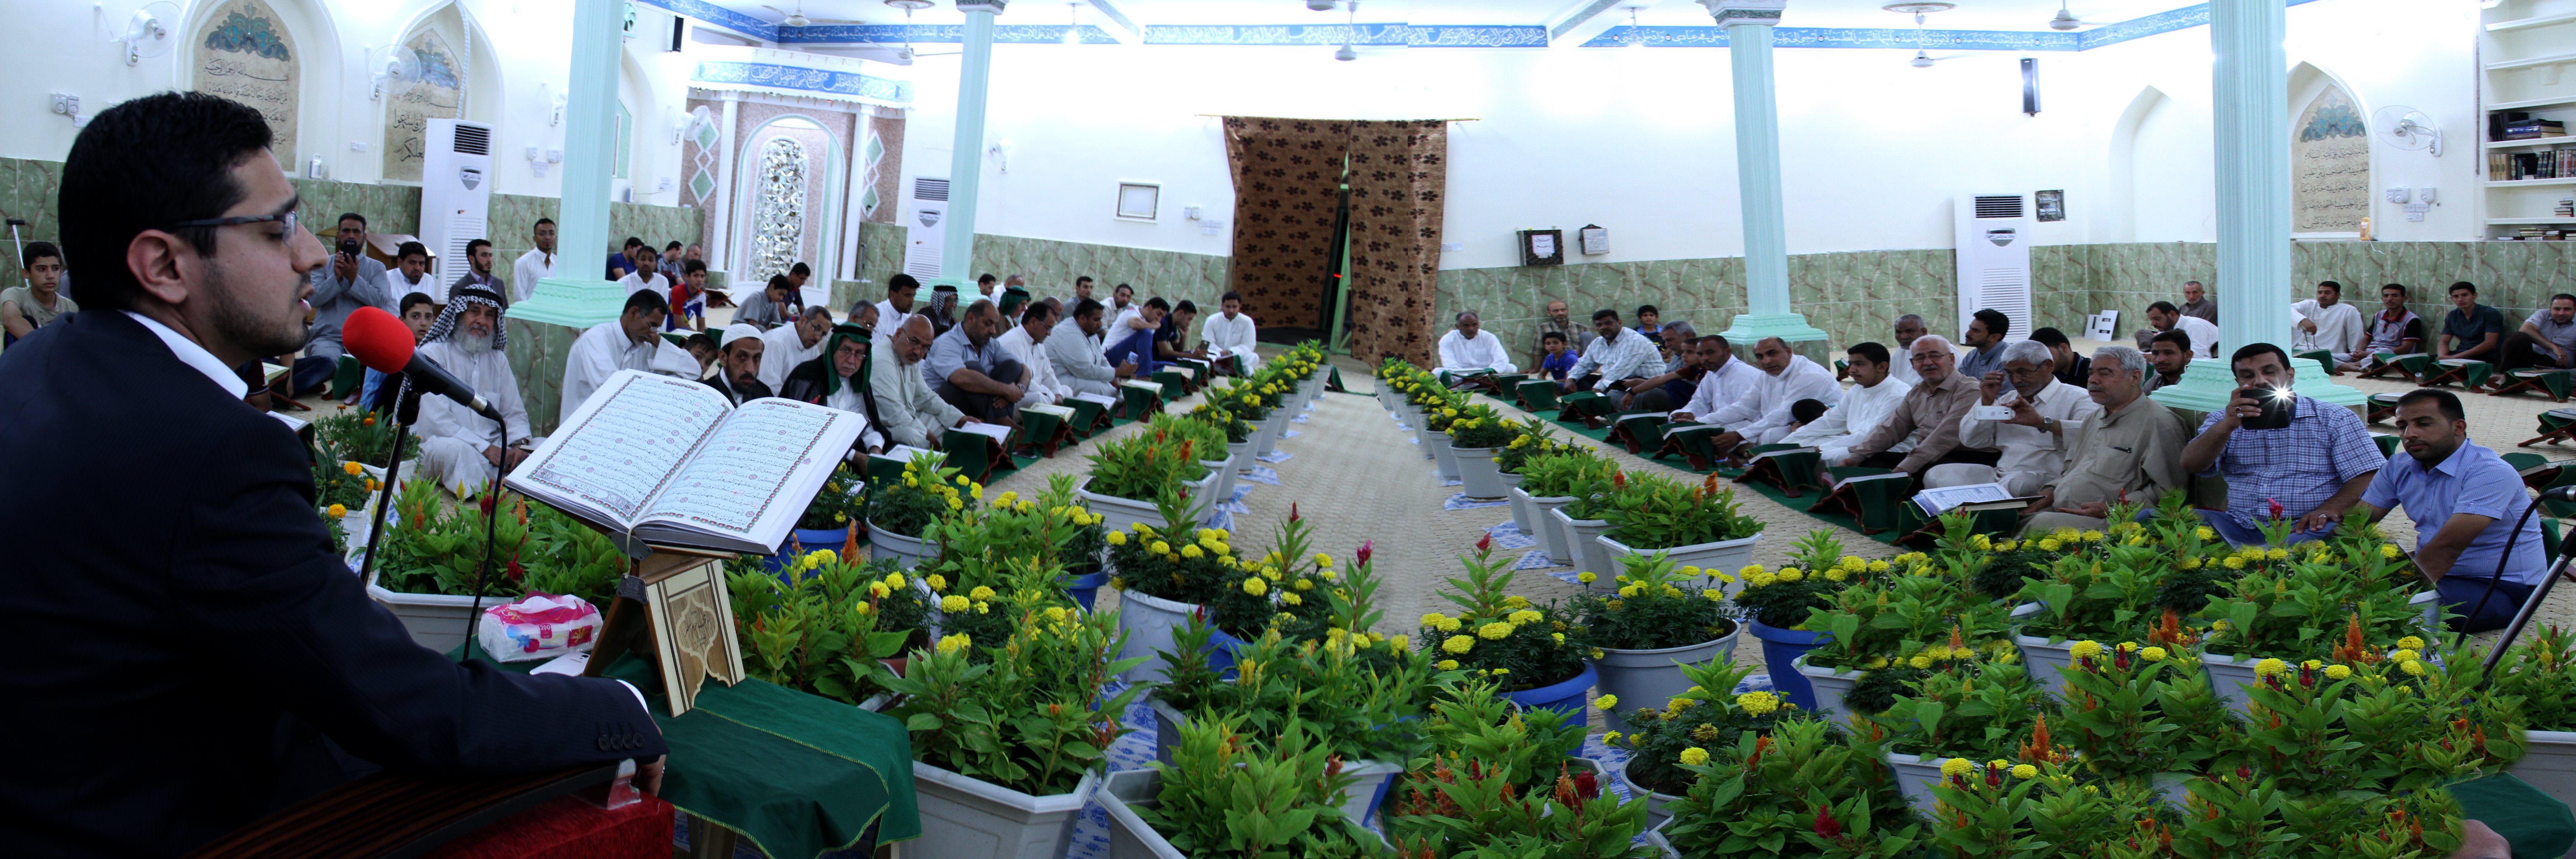 معهد القرآن الكريم يقيم محفلاً قرآنياً بهيجاً